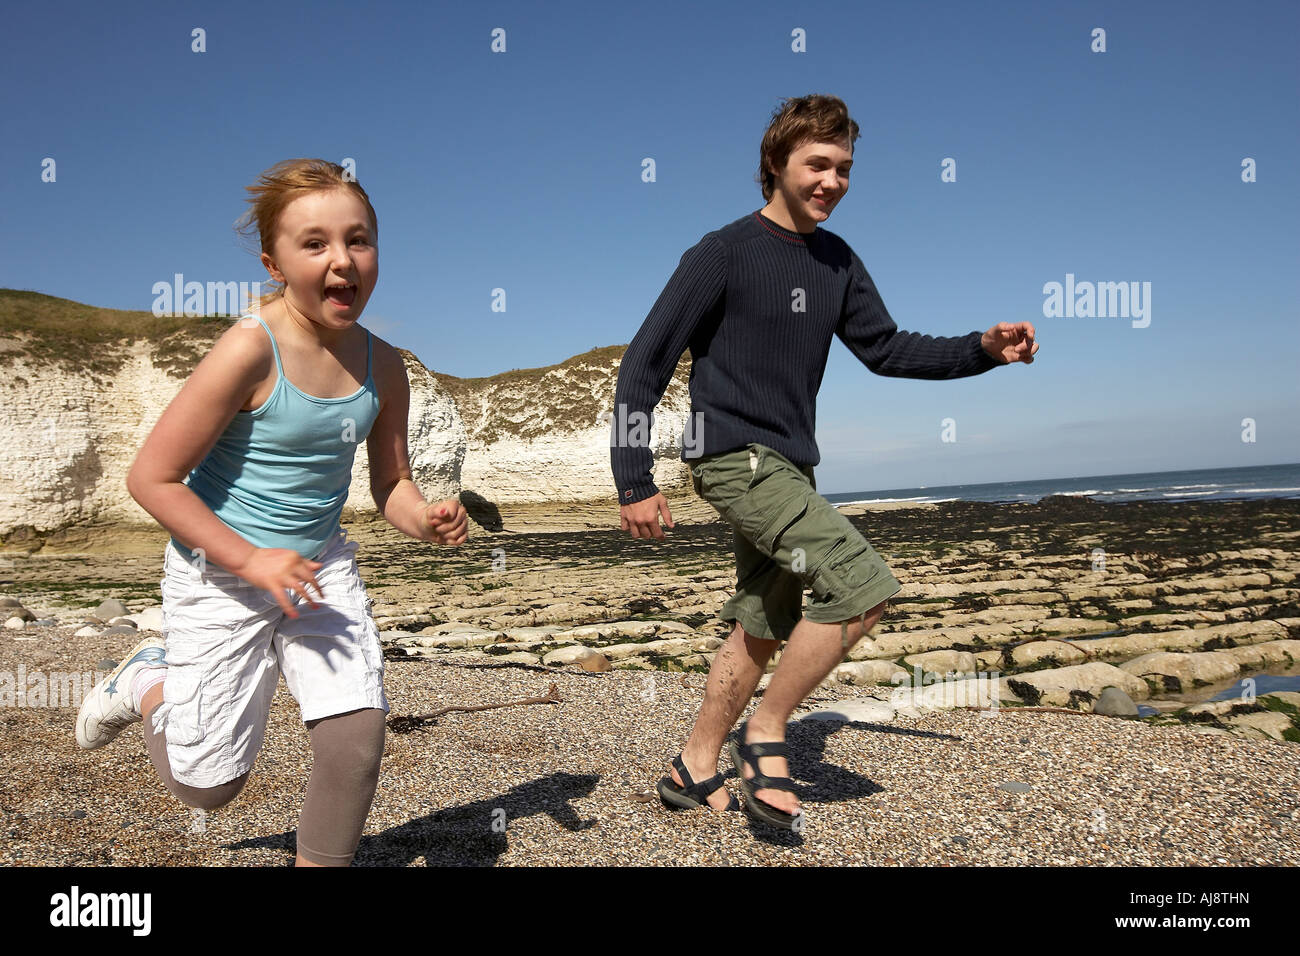 Neuf ans, fille et garçon de quinze ans d'exécution sur beach Flamborough Head beach East Yorkshire UK Banque D'Images